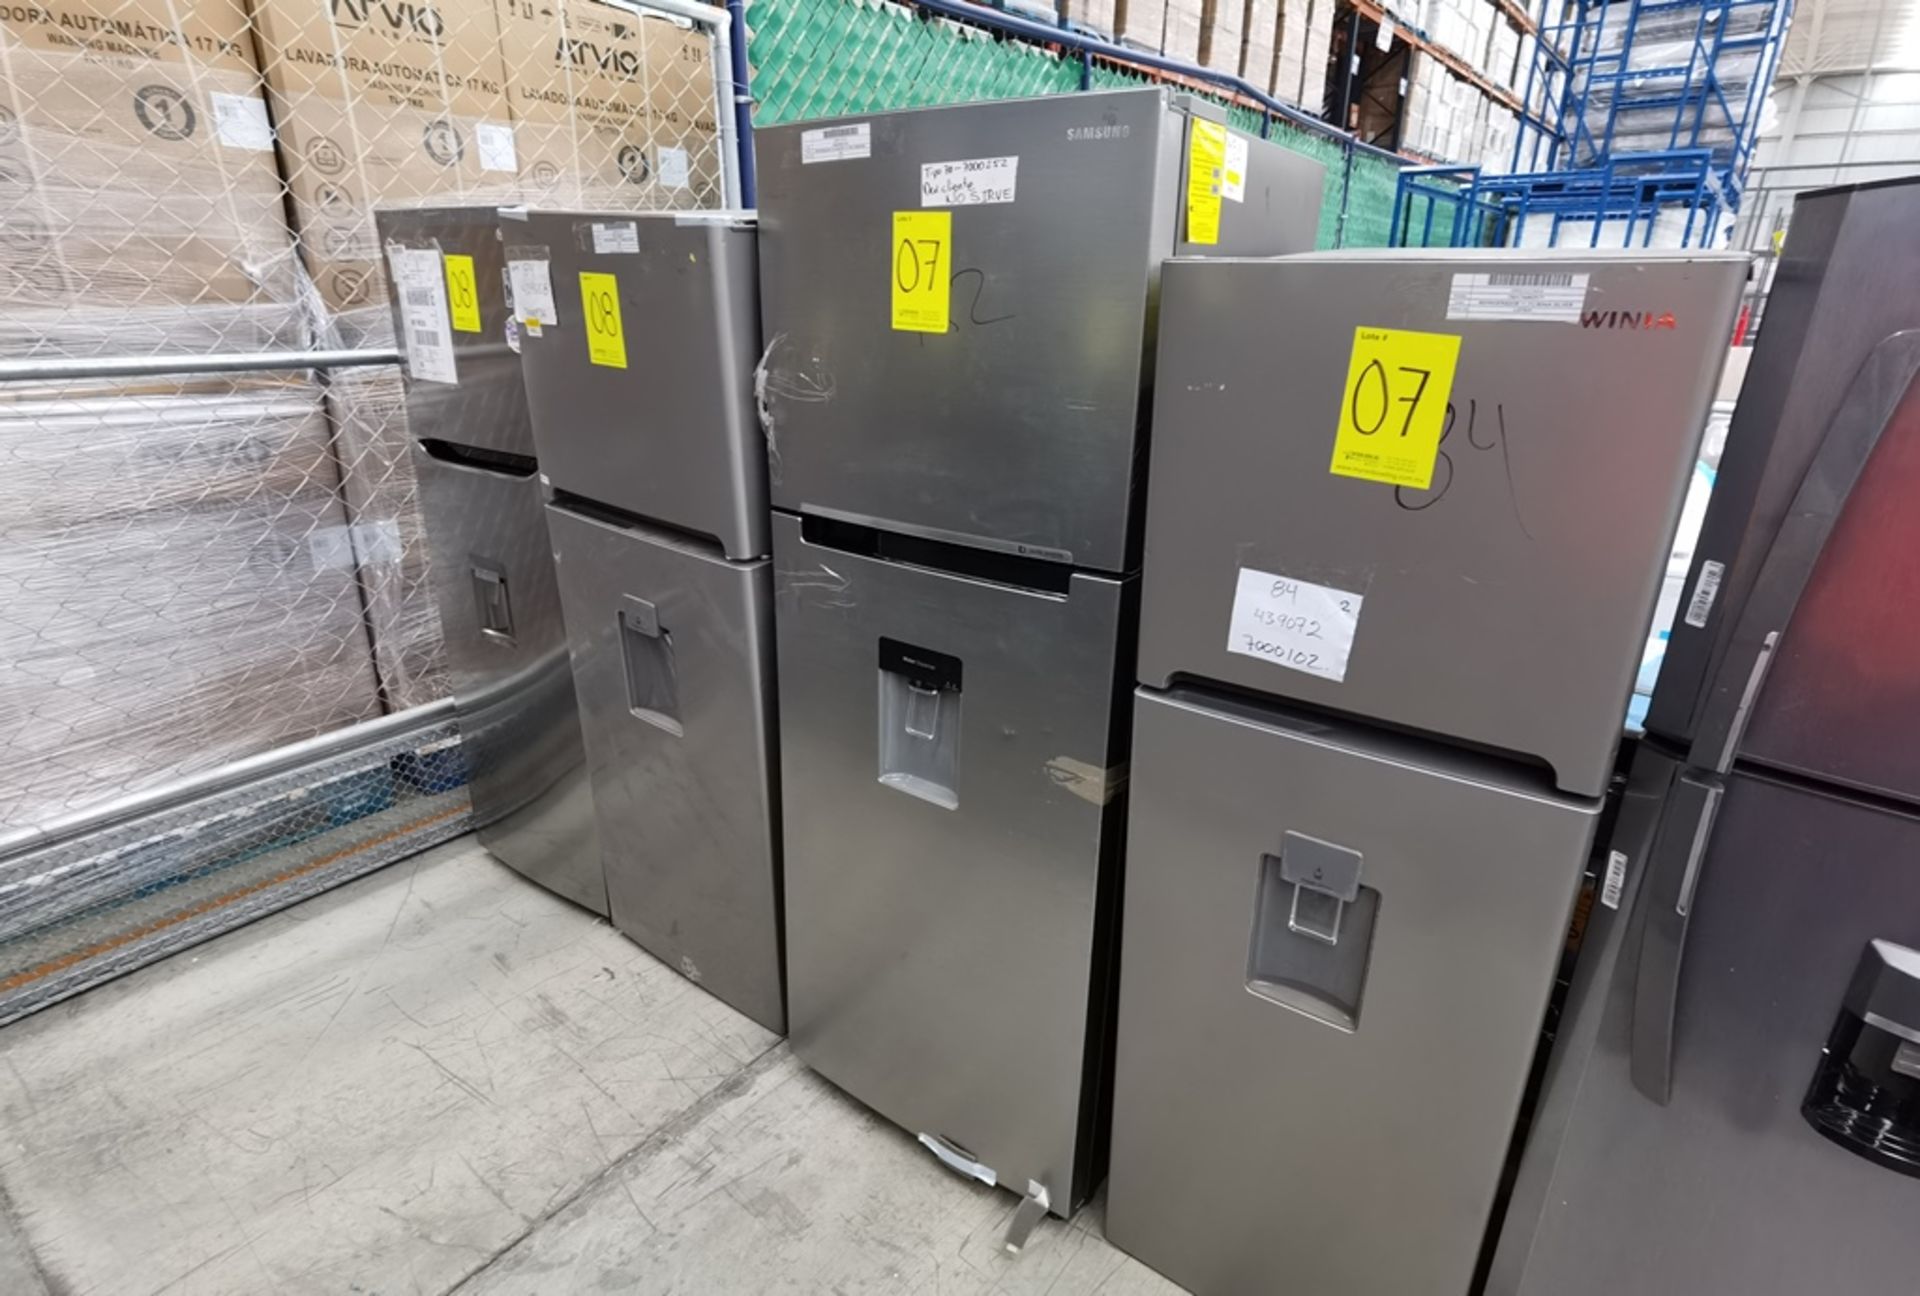 Lote De 2 Refrigeradores Contiene: 1 Refrigerador Marca Winia, Modelo DFR25210GMDX, Serie MR21yN118 - Image 15 of 19